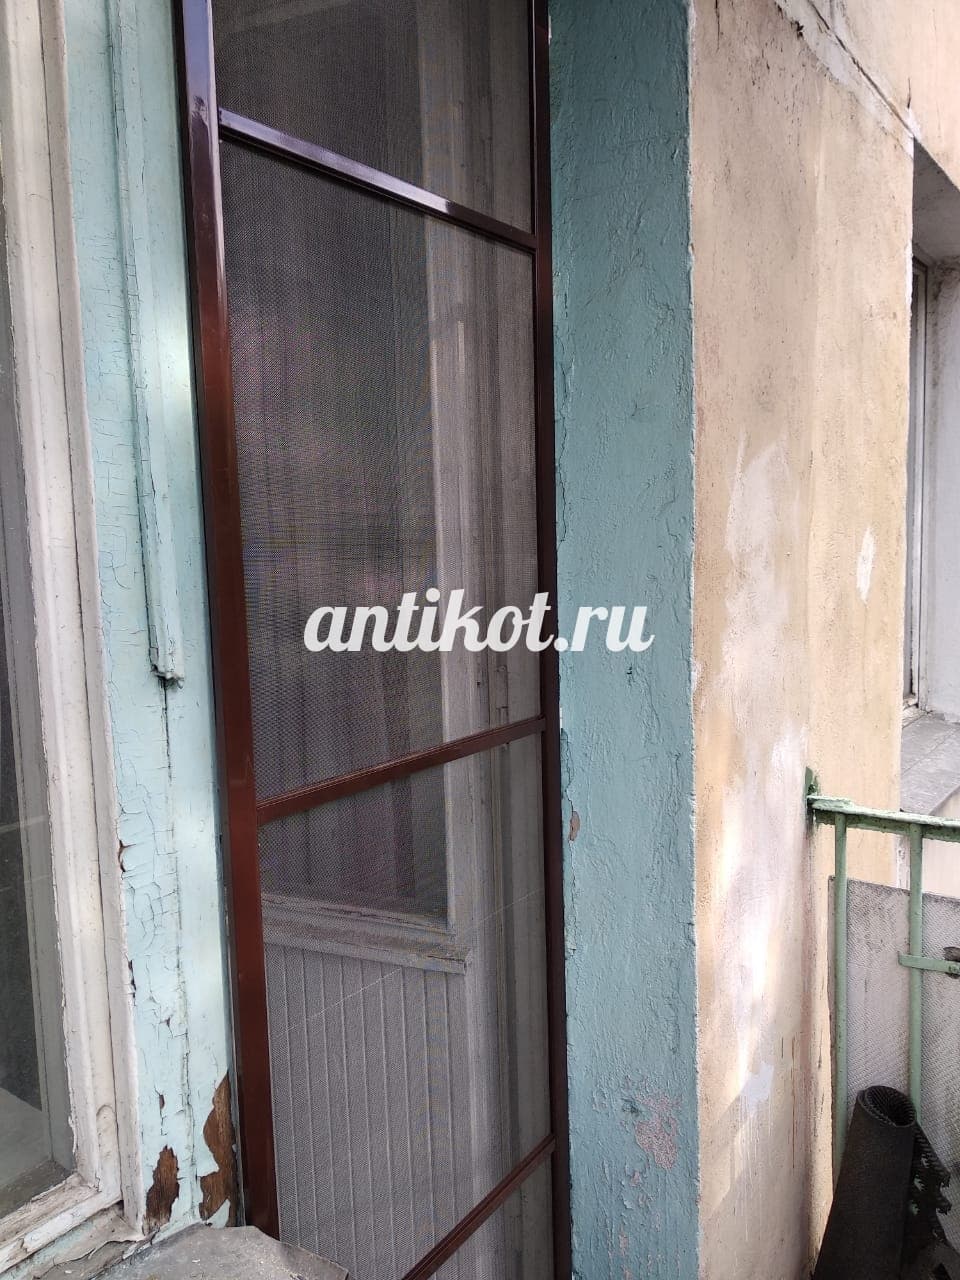 Setka Dver Antikoshka Na Balkon V Moskve Antikot Ru